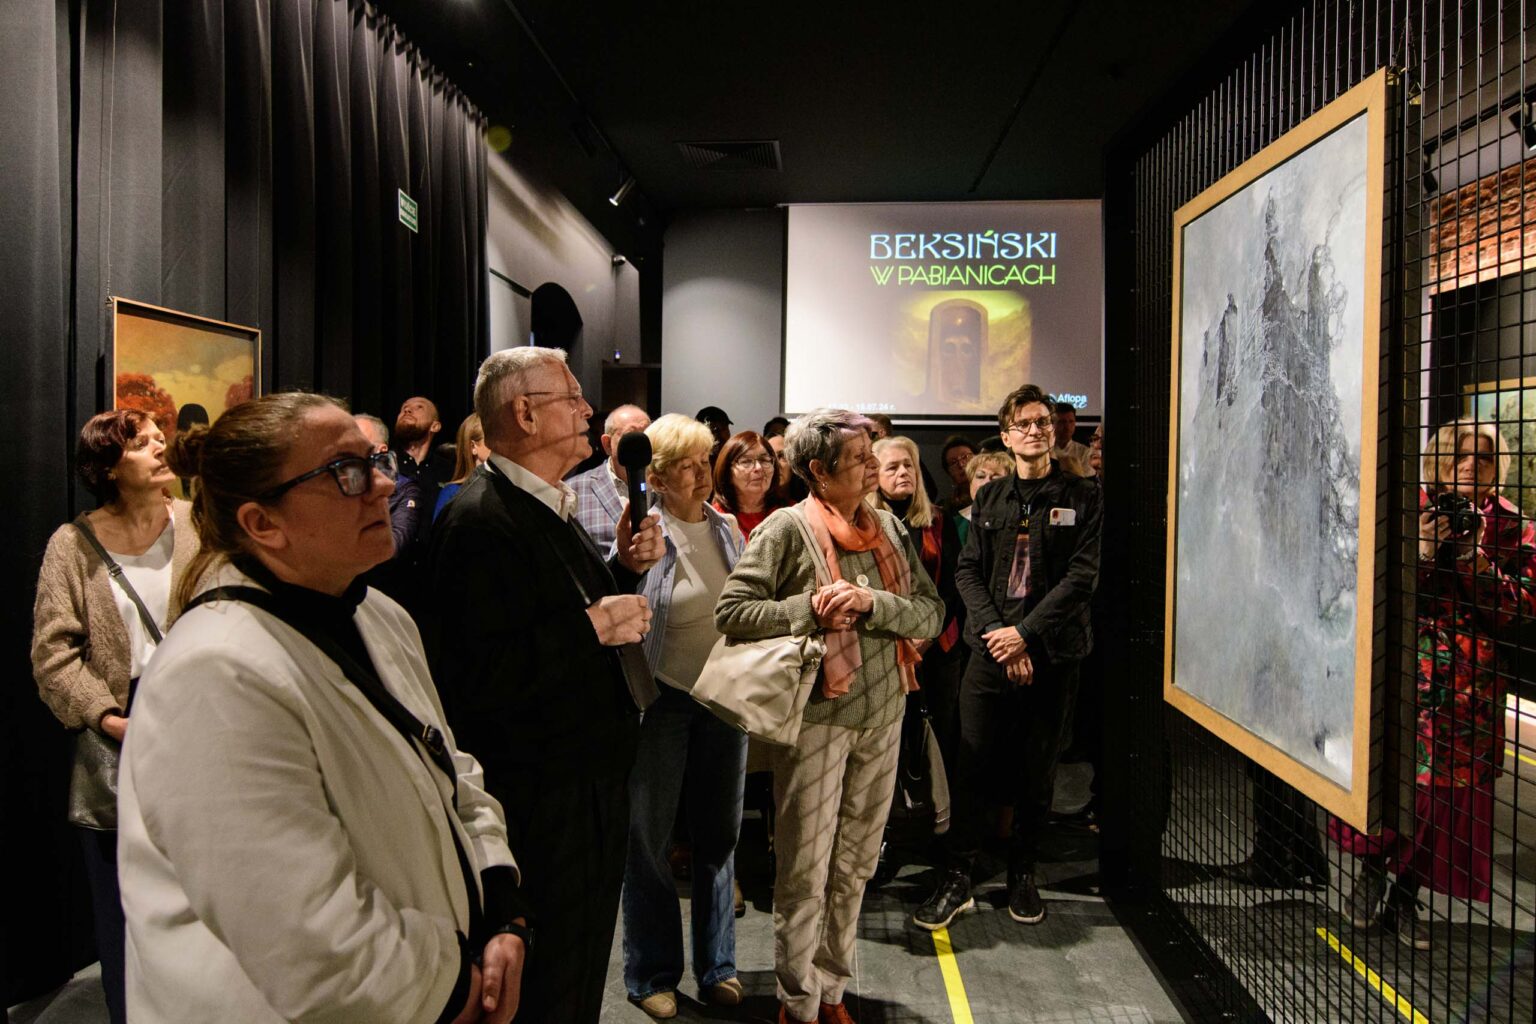 Otwarcie wystawy Zdzislawa Beksinskiego w Pabianicach 10